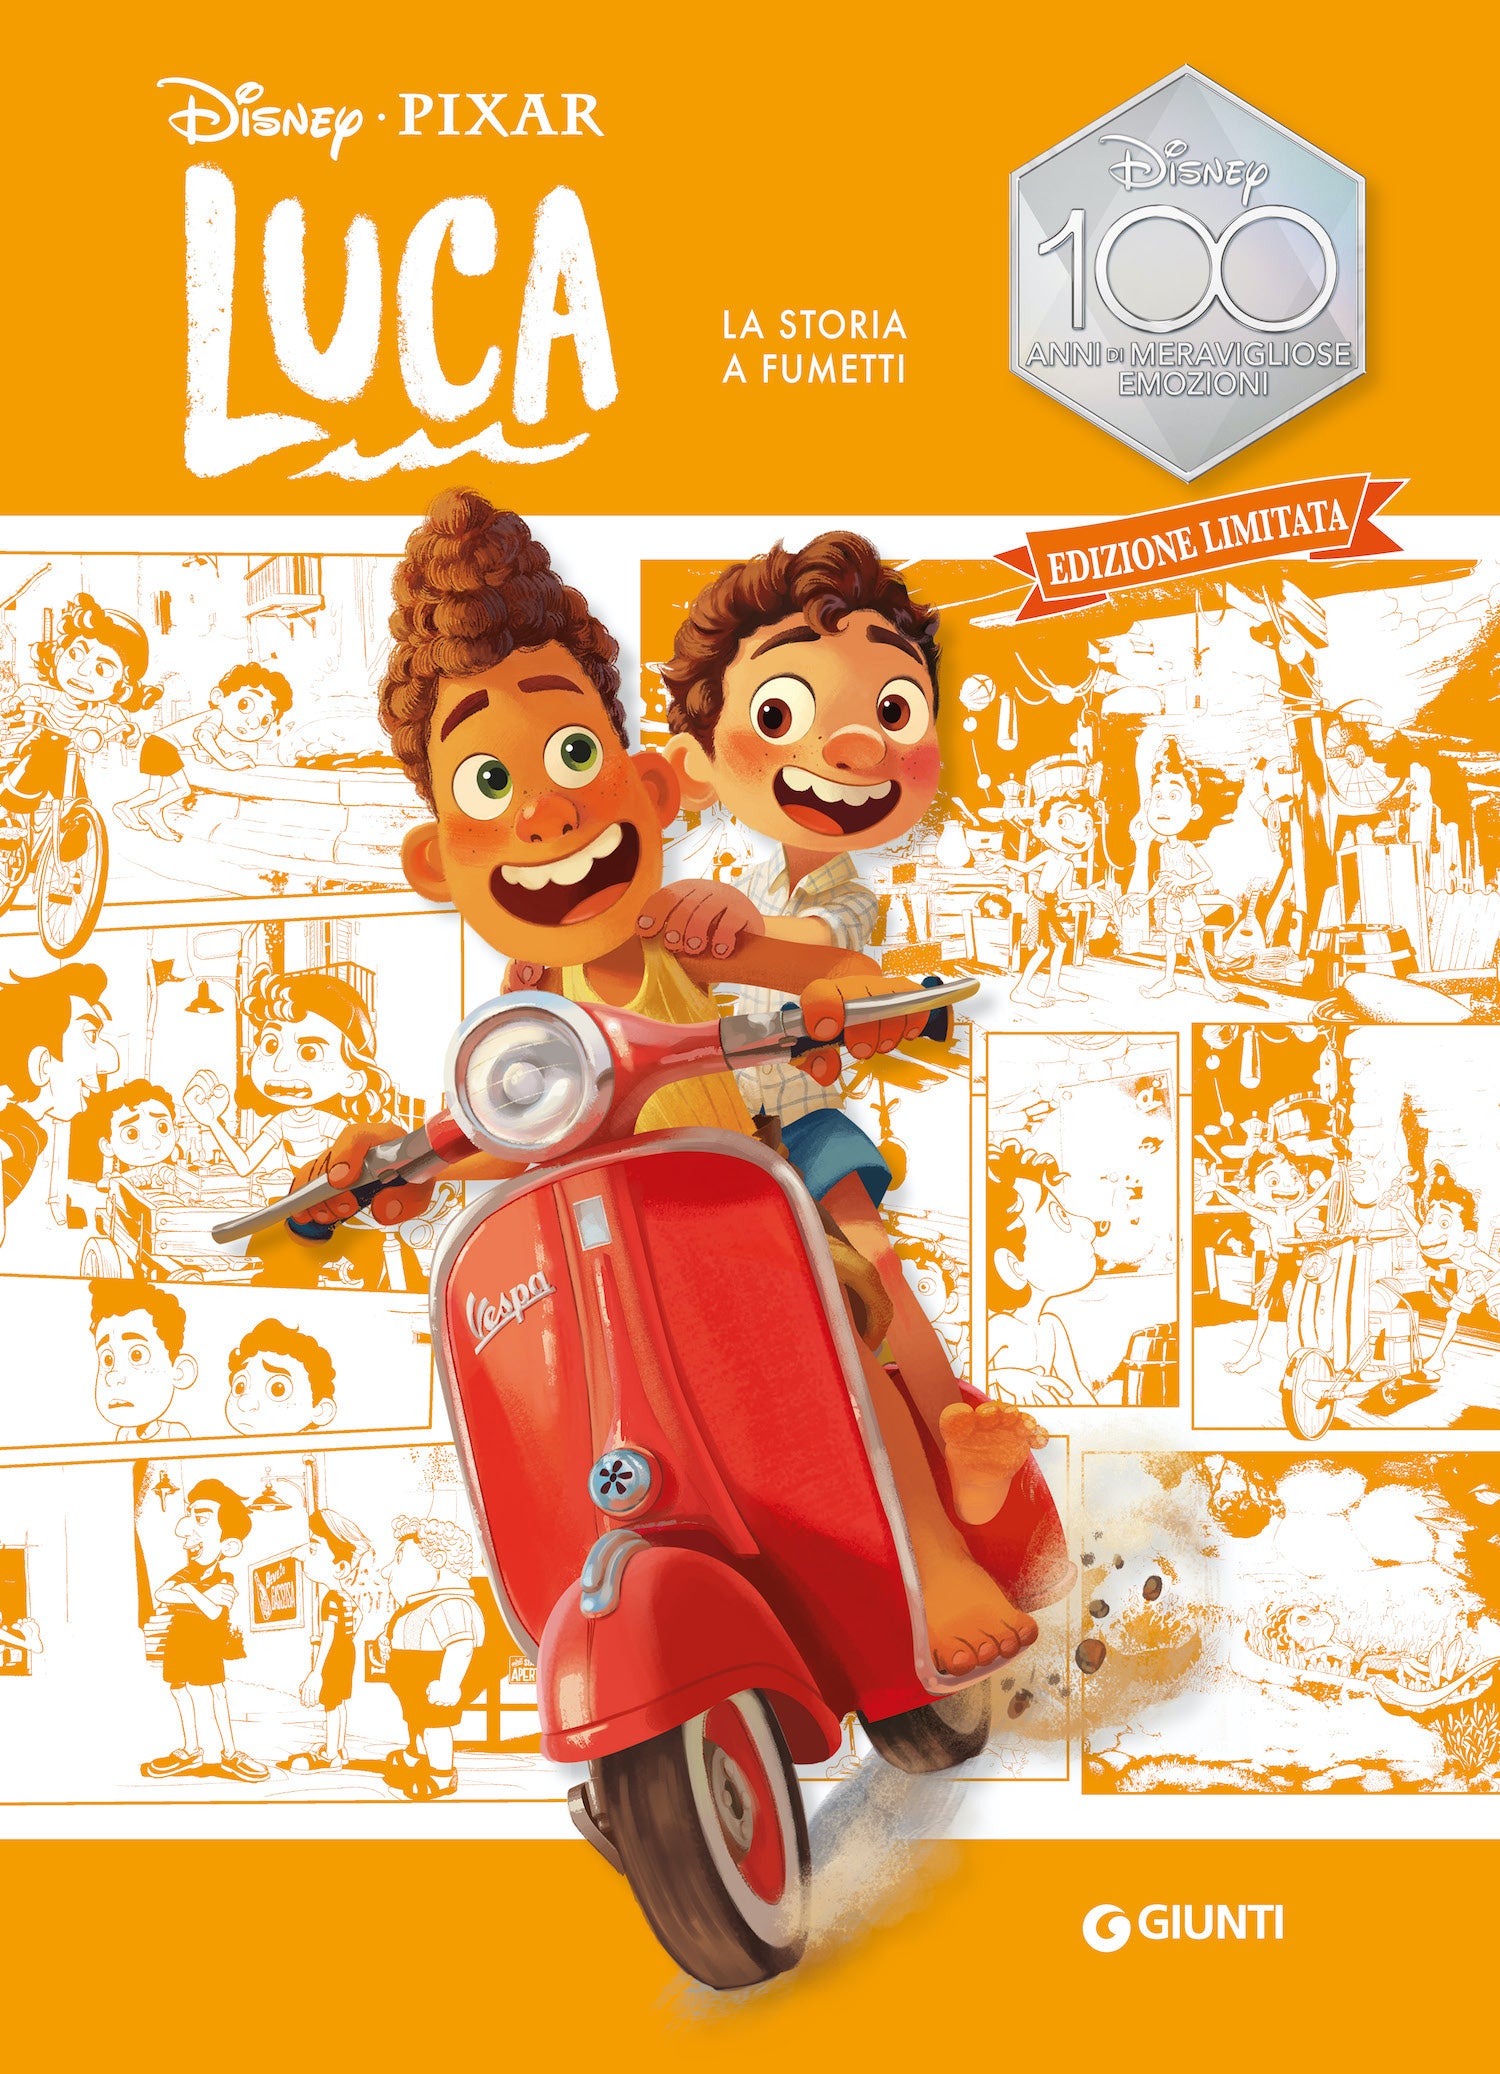 Luca La storia a fumetti Edizione limitata. Disney 100 Anni di meravigliose emozioni